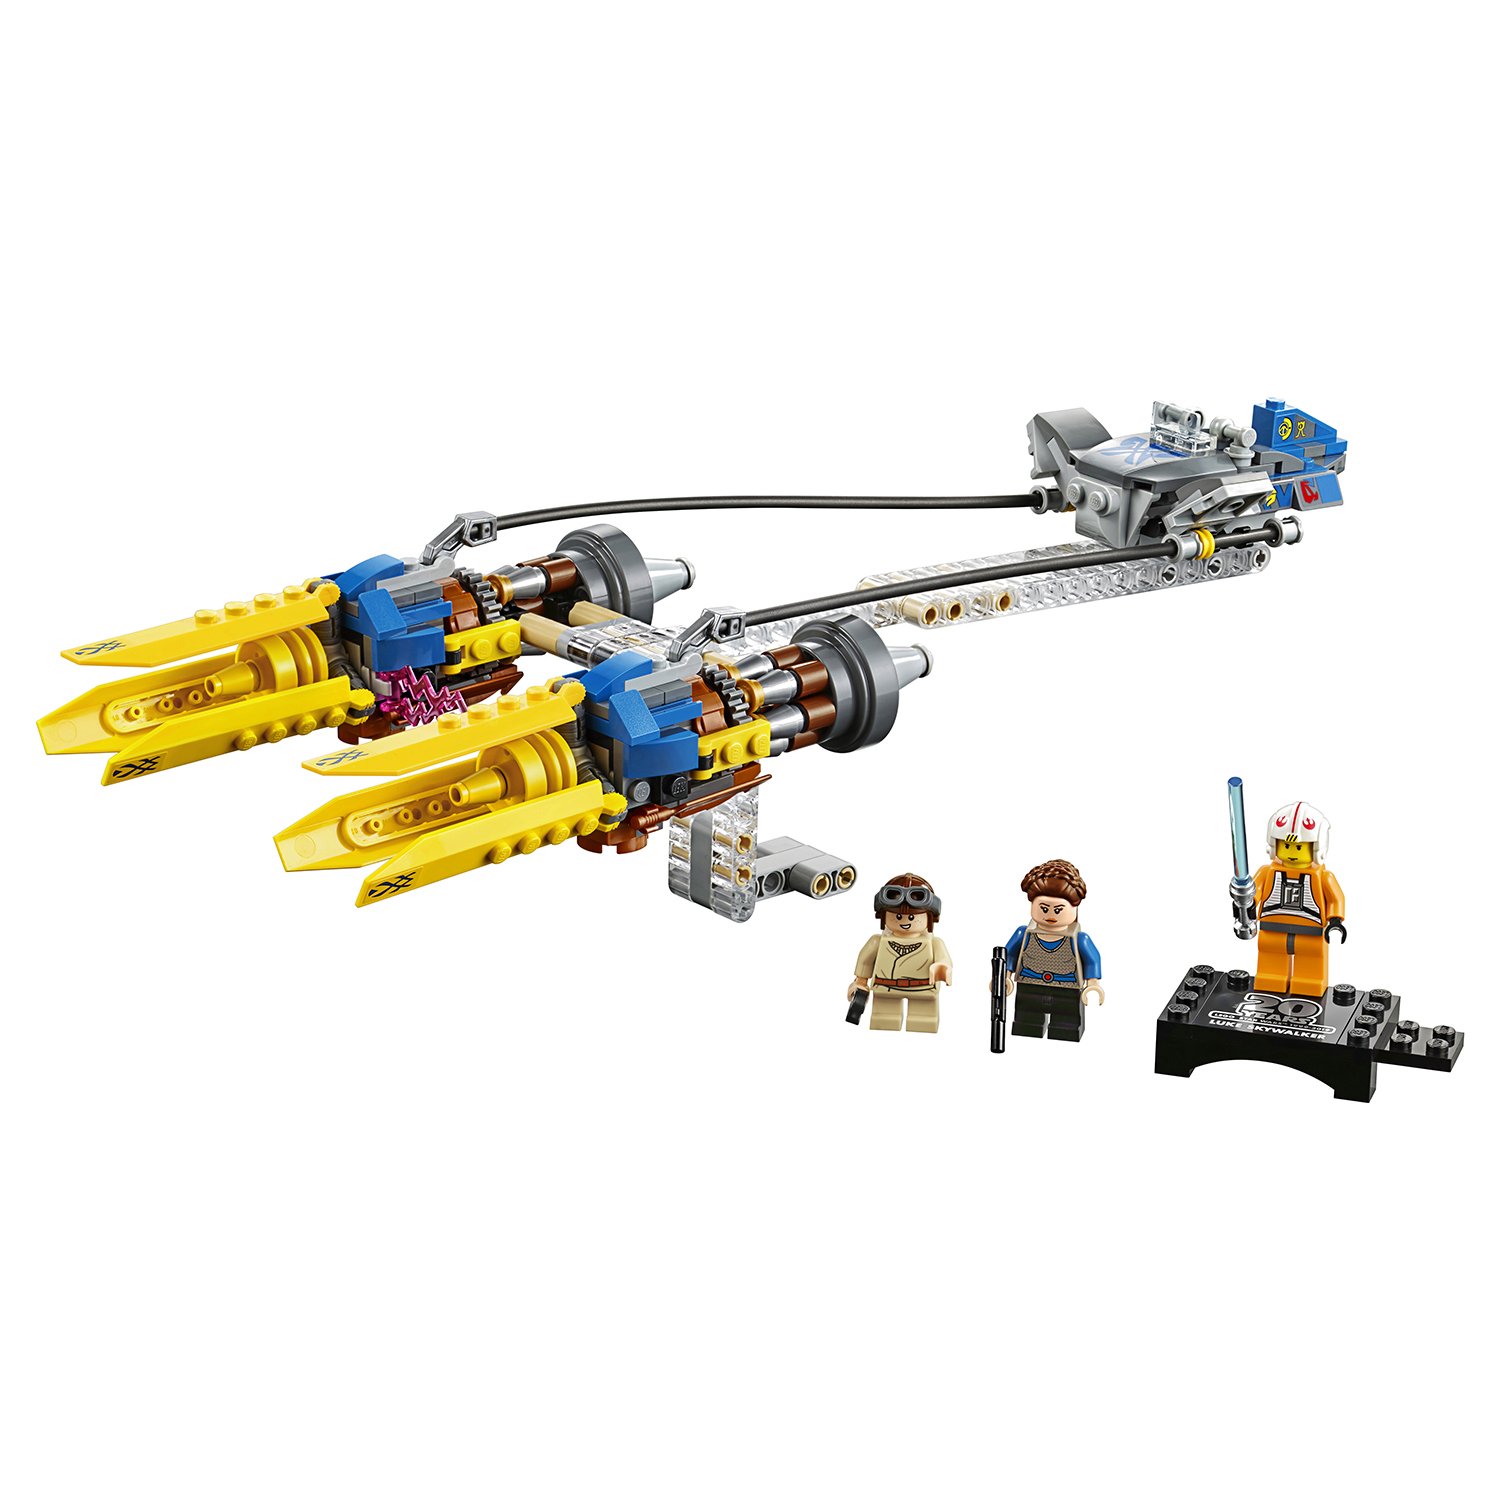 Lego Star Wars 75258 Гоночная капсула Энакина выпуск к 20-му юбилею